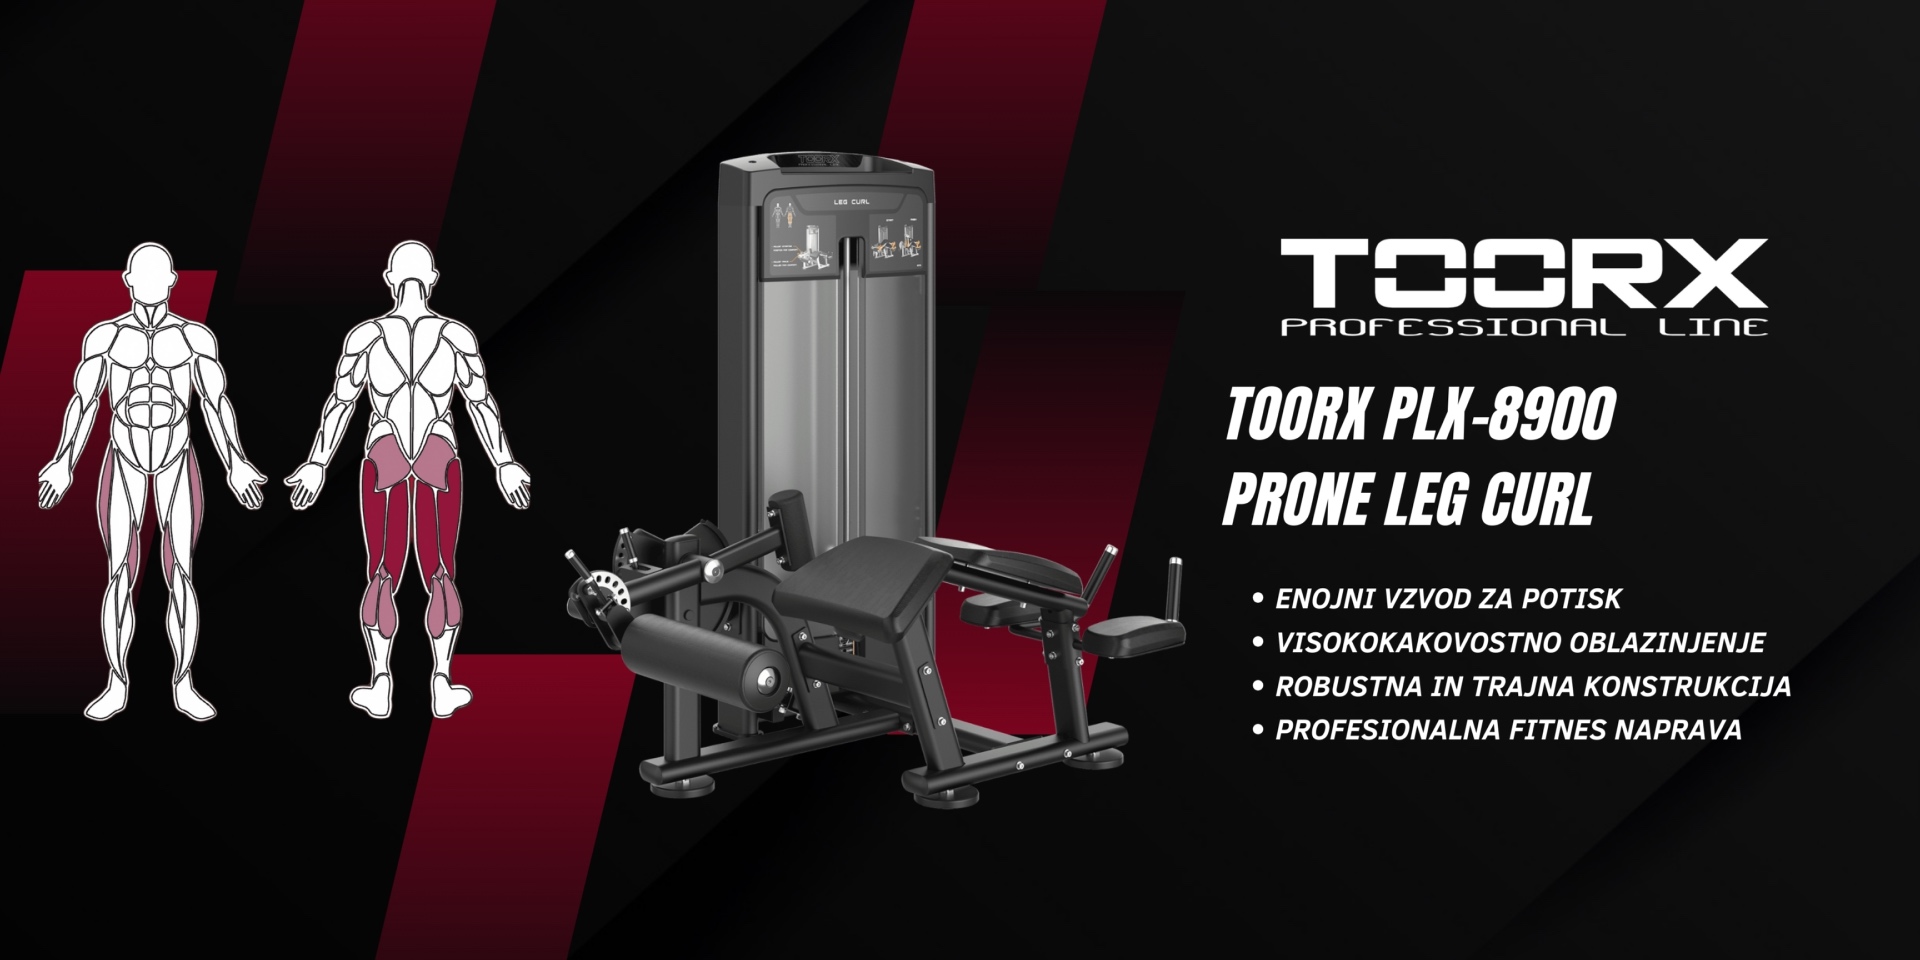 Toorx PLX-8900 Prone Leg Curl - profesionalna fitnes naprava za trening zadnjega dela nog - pin loaded